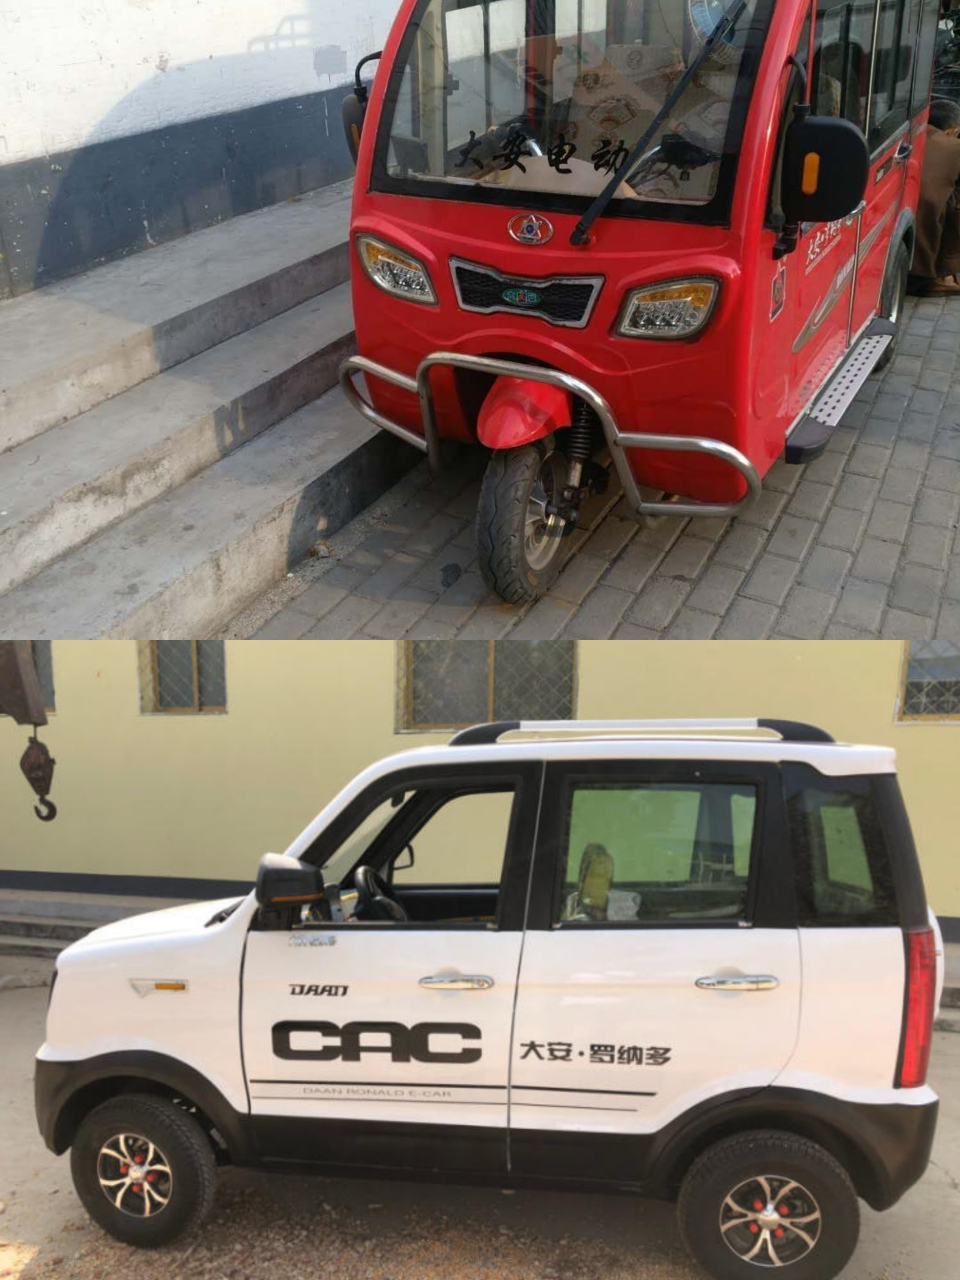 在天津,估计没有人不认识大安的电动车